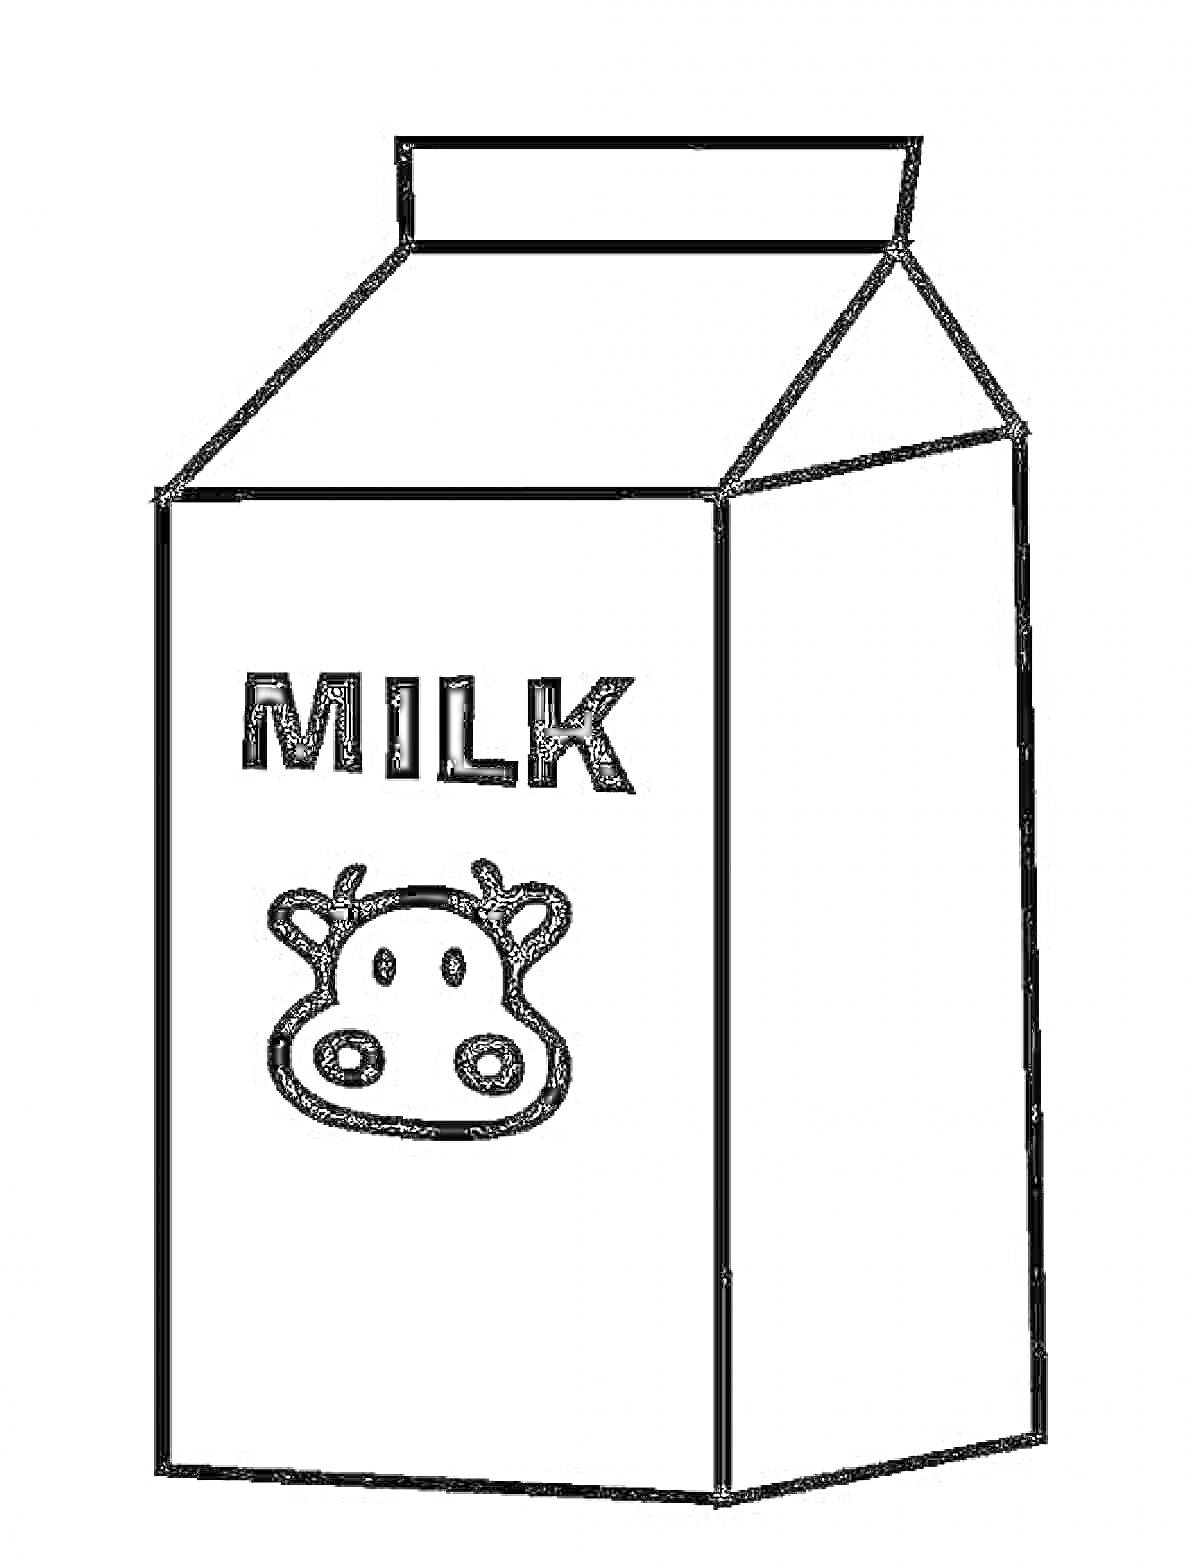 Раскраска Пакет молока с рисунком коровы и надписью 